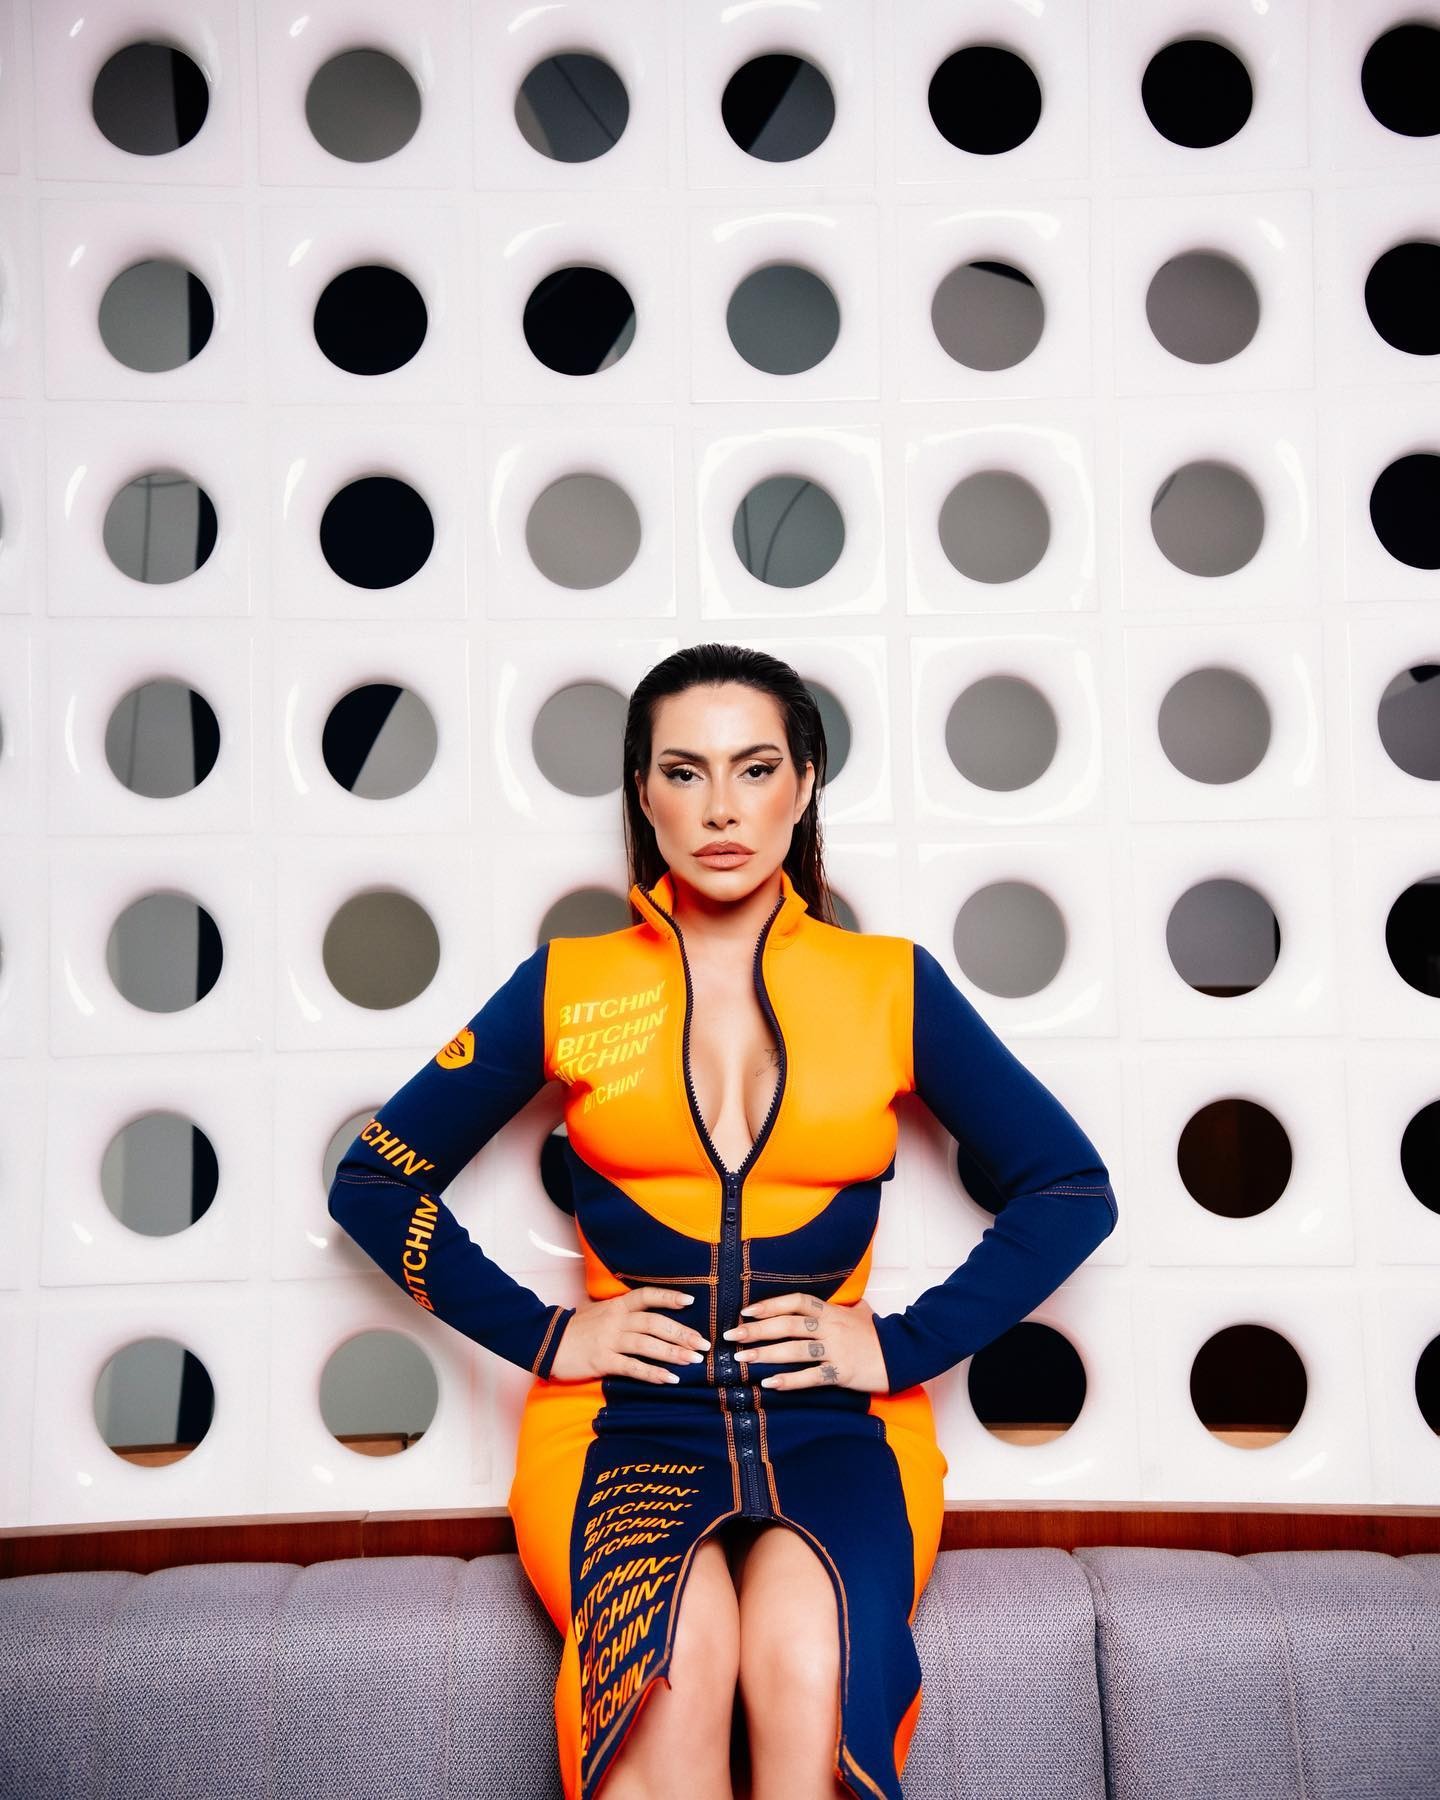 Cleo publica álbum de fotos com vestido em tons de laranja e azul e zíper frontal (Foto: Reprodução / Instagram)